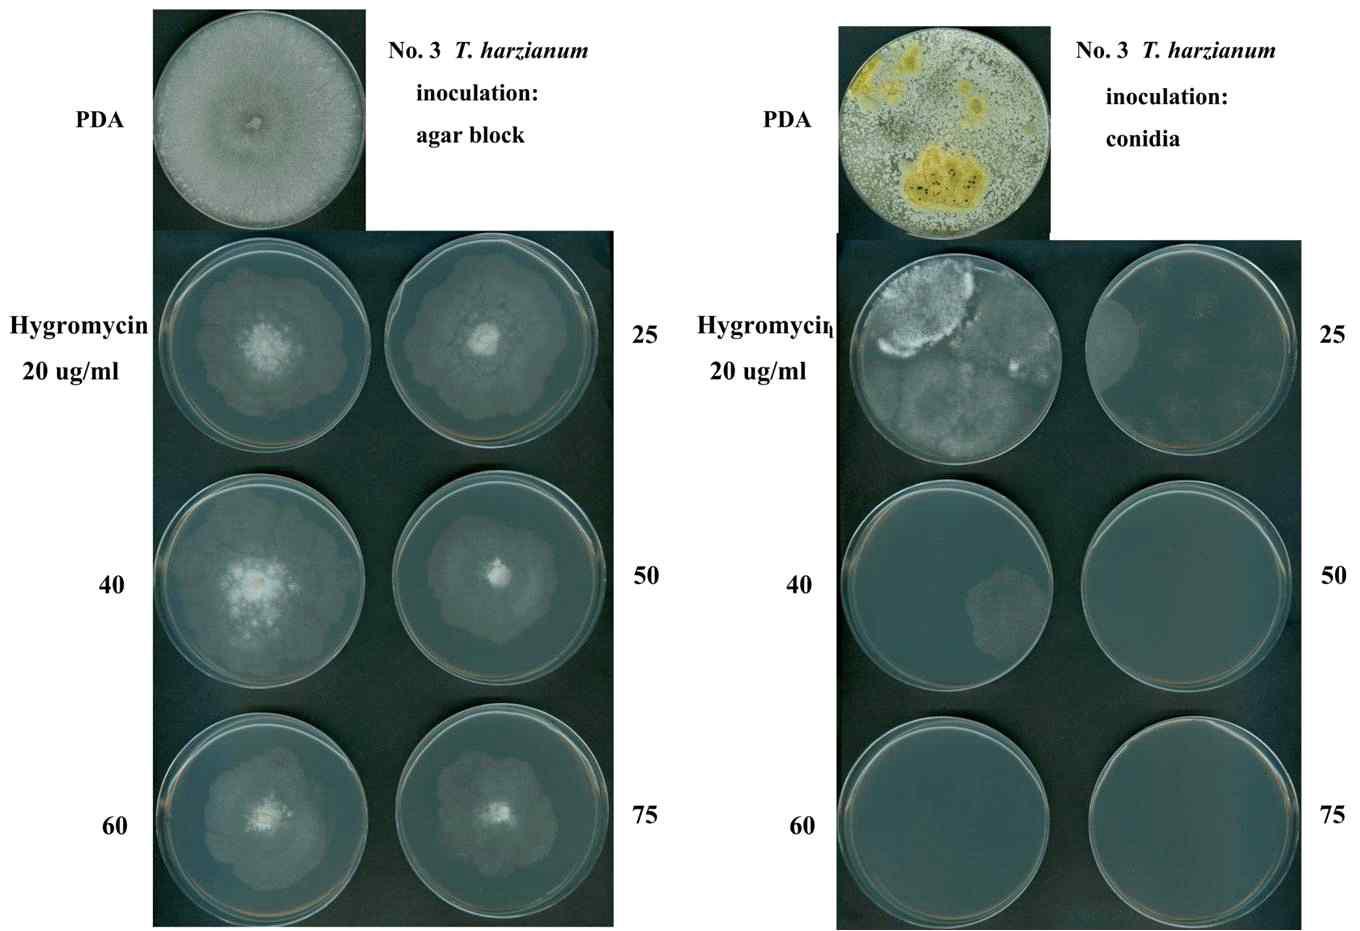 버섯피해균주, T. harzianum의 antibiotic selective marker test. Hygromycin 20, 40, 60ug/ml을 각각 첨가한PDA 고체배지에 배지에 오염균주 각각을 접종하여 30℃에 서 1주일간 배양 후 관찰